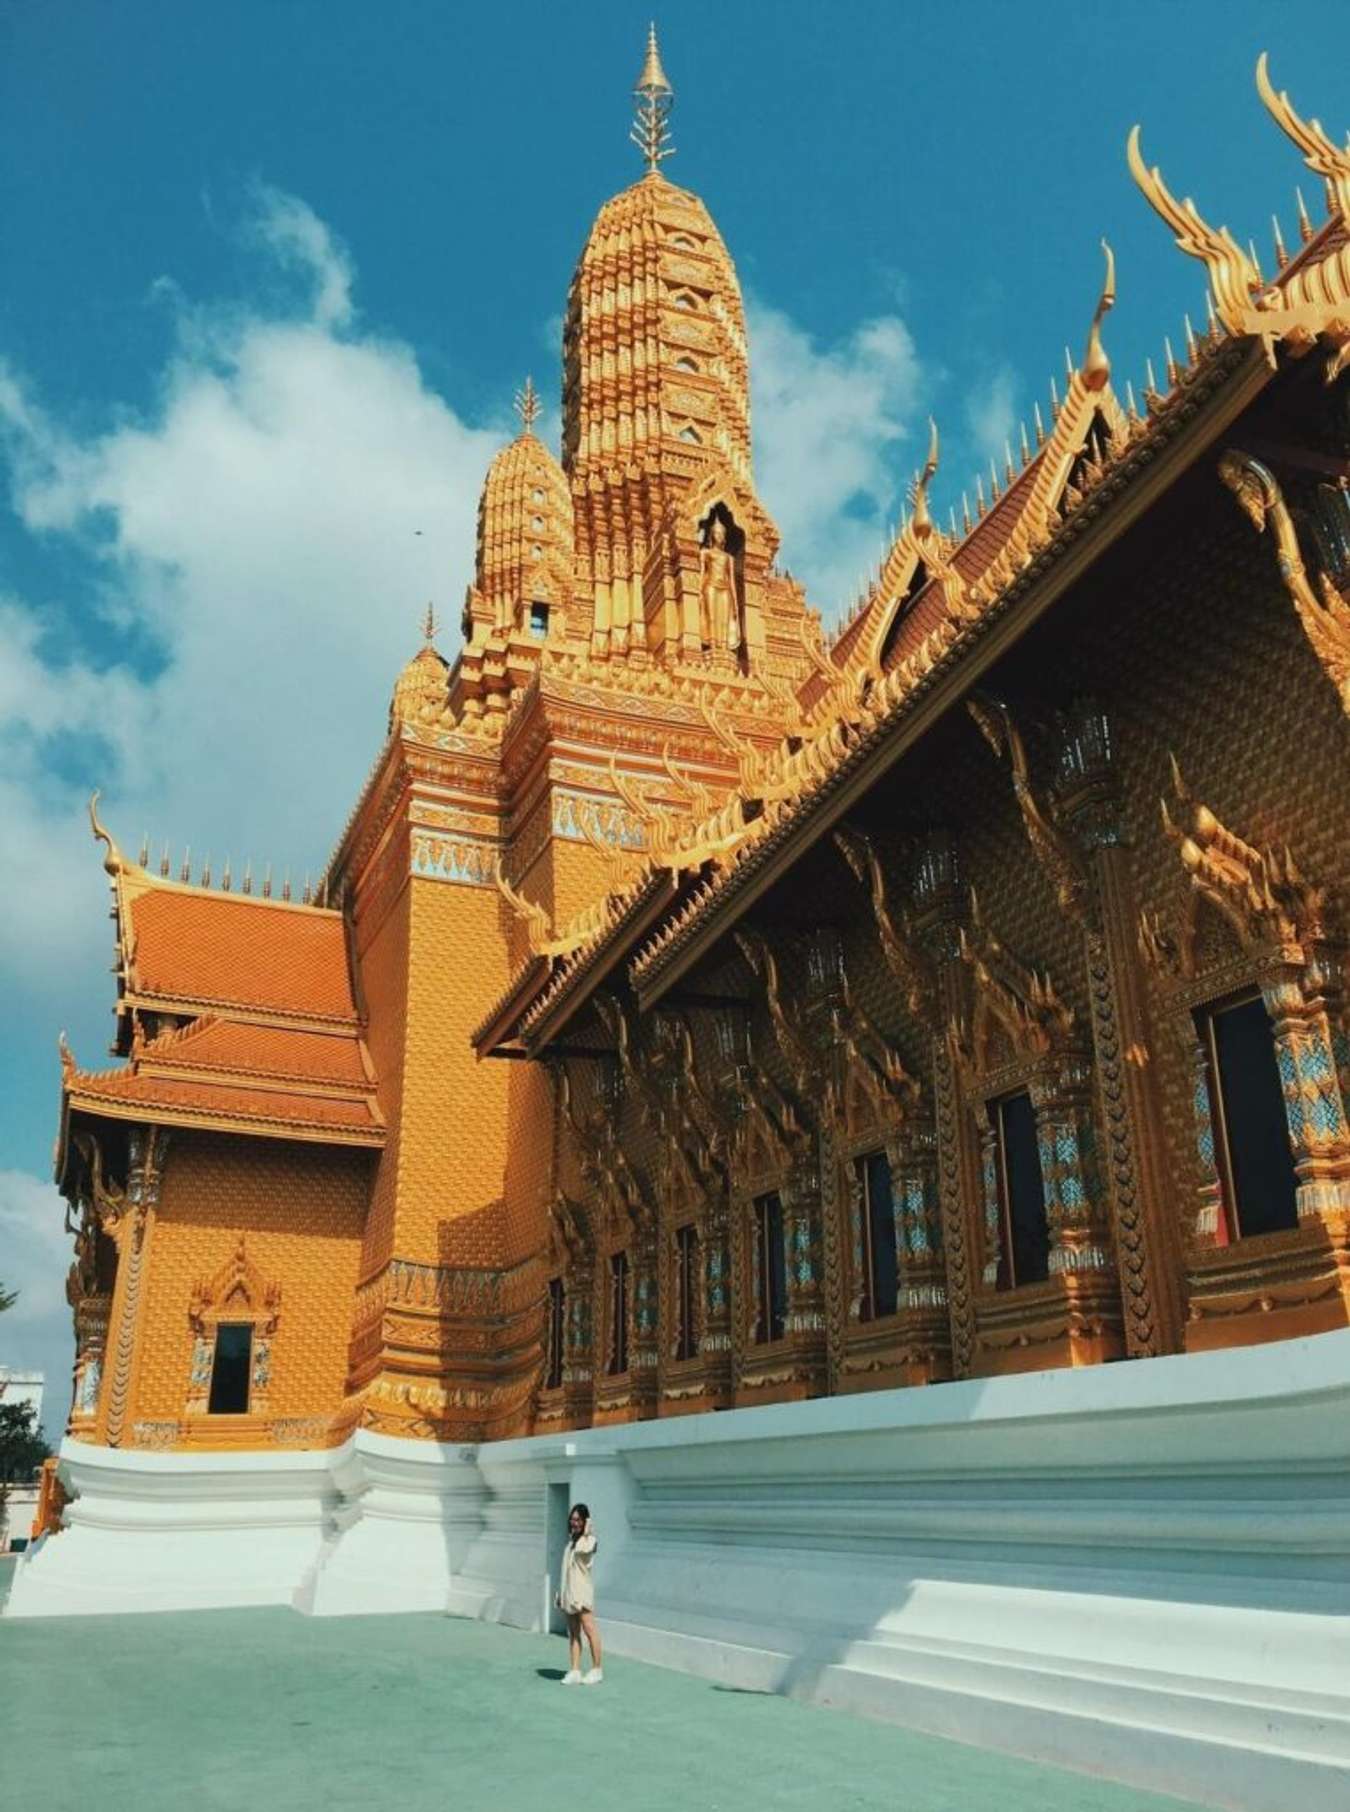 du lịch Thái Lan tháng 10 có gì đẹp?